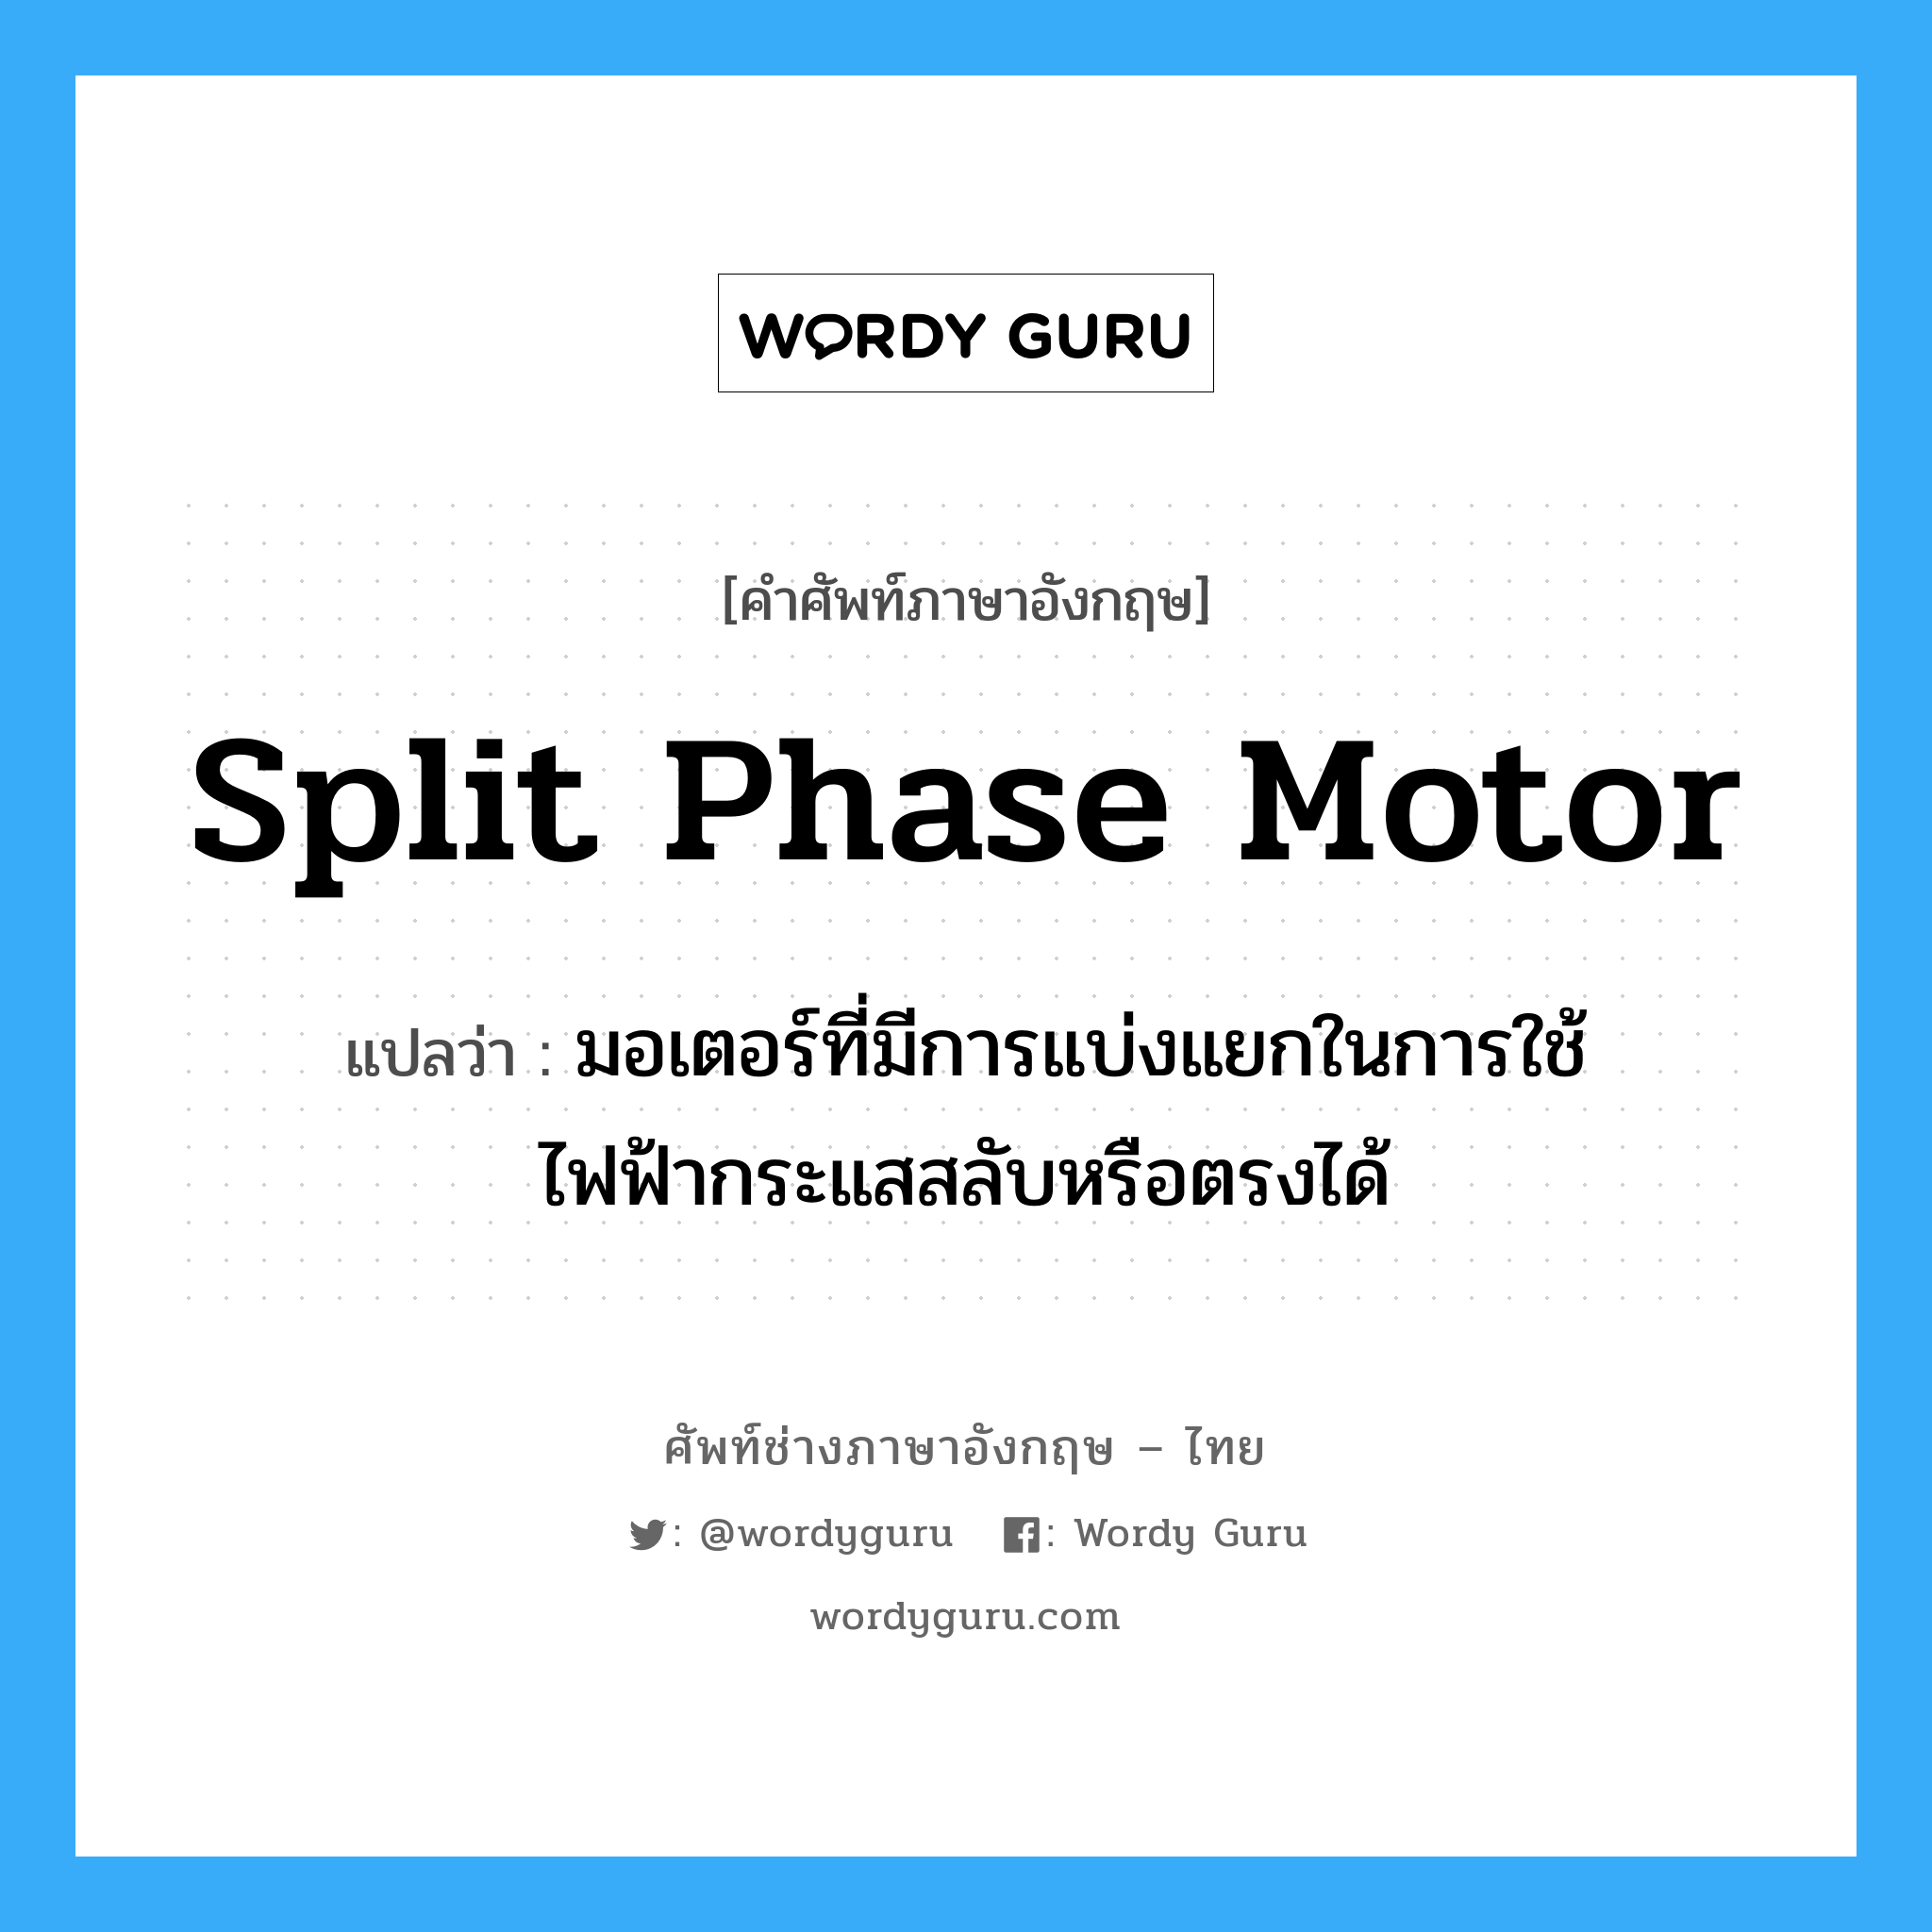 split phase motor แปลว่า?, คำศัพท์ช่างภาษาอังกฤษ - ไทย split phase motor คำศัพท์ภาษาอังกฤษ split phase motor แปลว่า มอเตอร์ที่มีการแบ่งแยกในการใช้ไฟฟ้ากระแสสลับหรือตรงได้